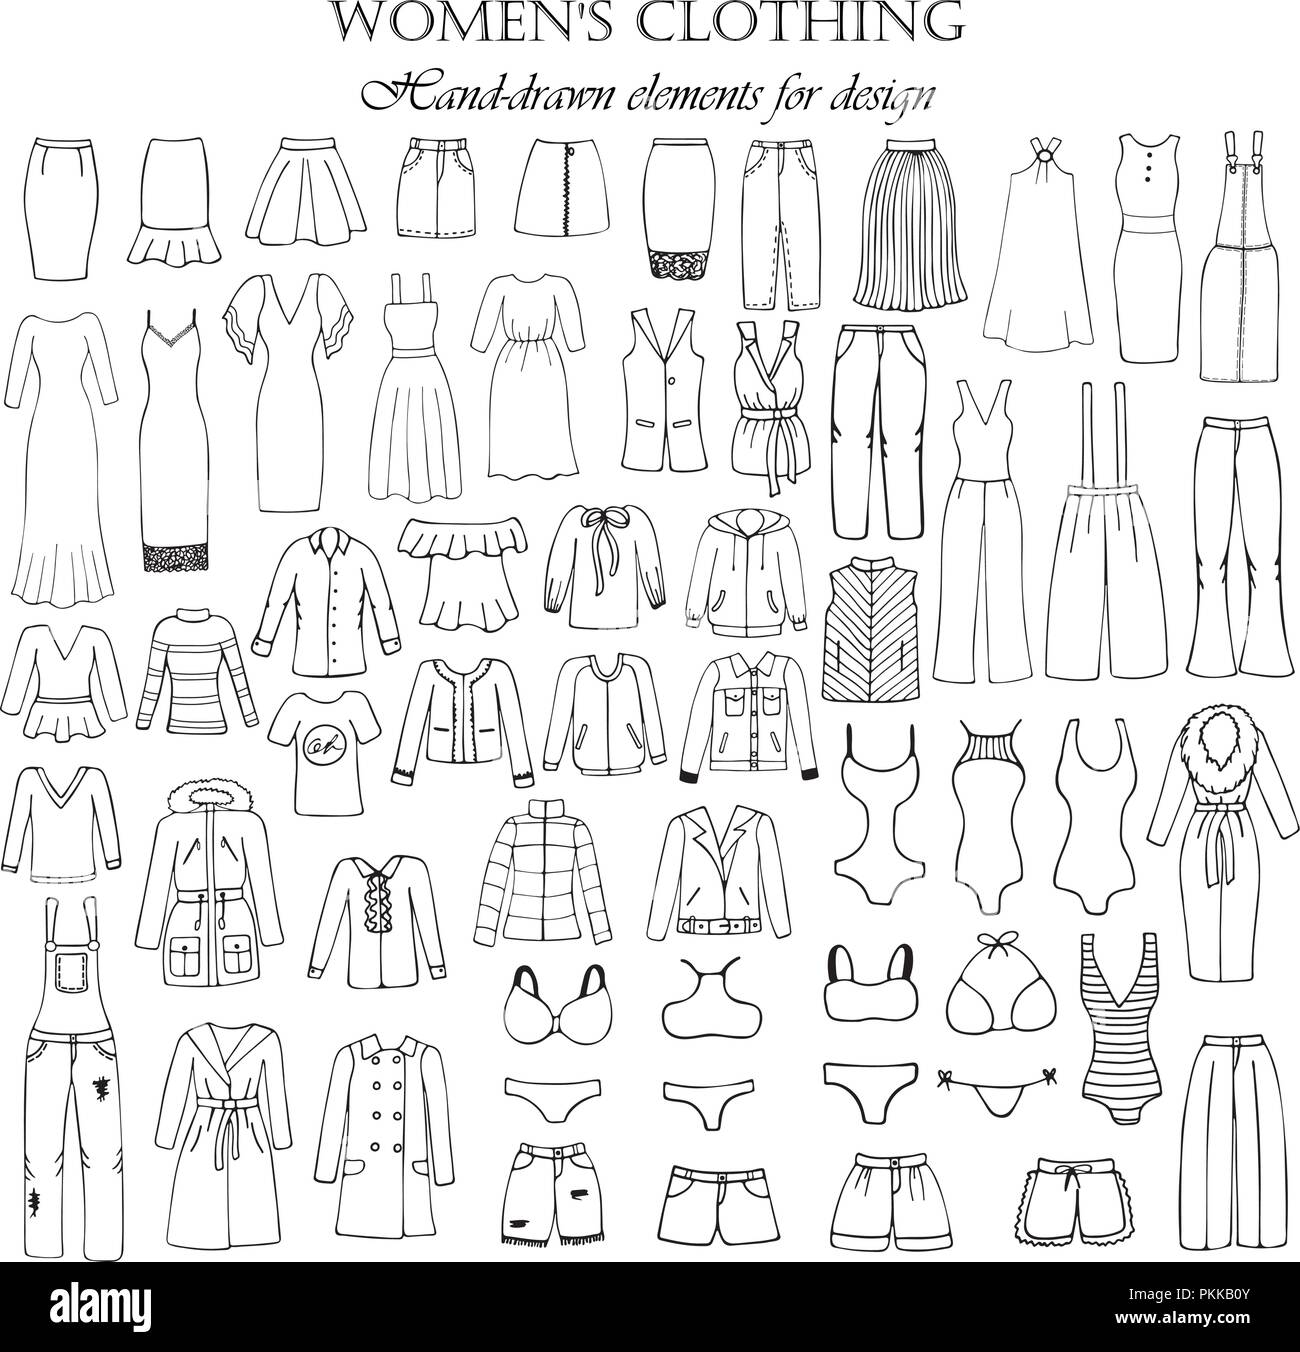 55-hand gezeichnete Elemente der Frauen Kleidung für Design. Schwarz-weiß-Vector  Illustration Stock-Vektorgrafik - Alamy